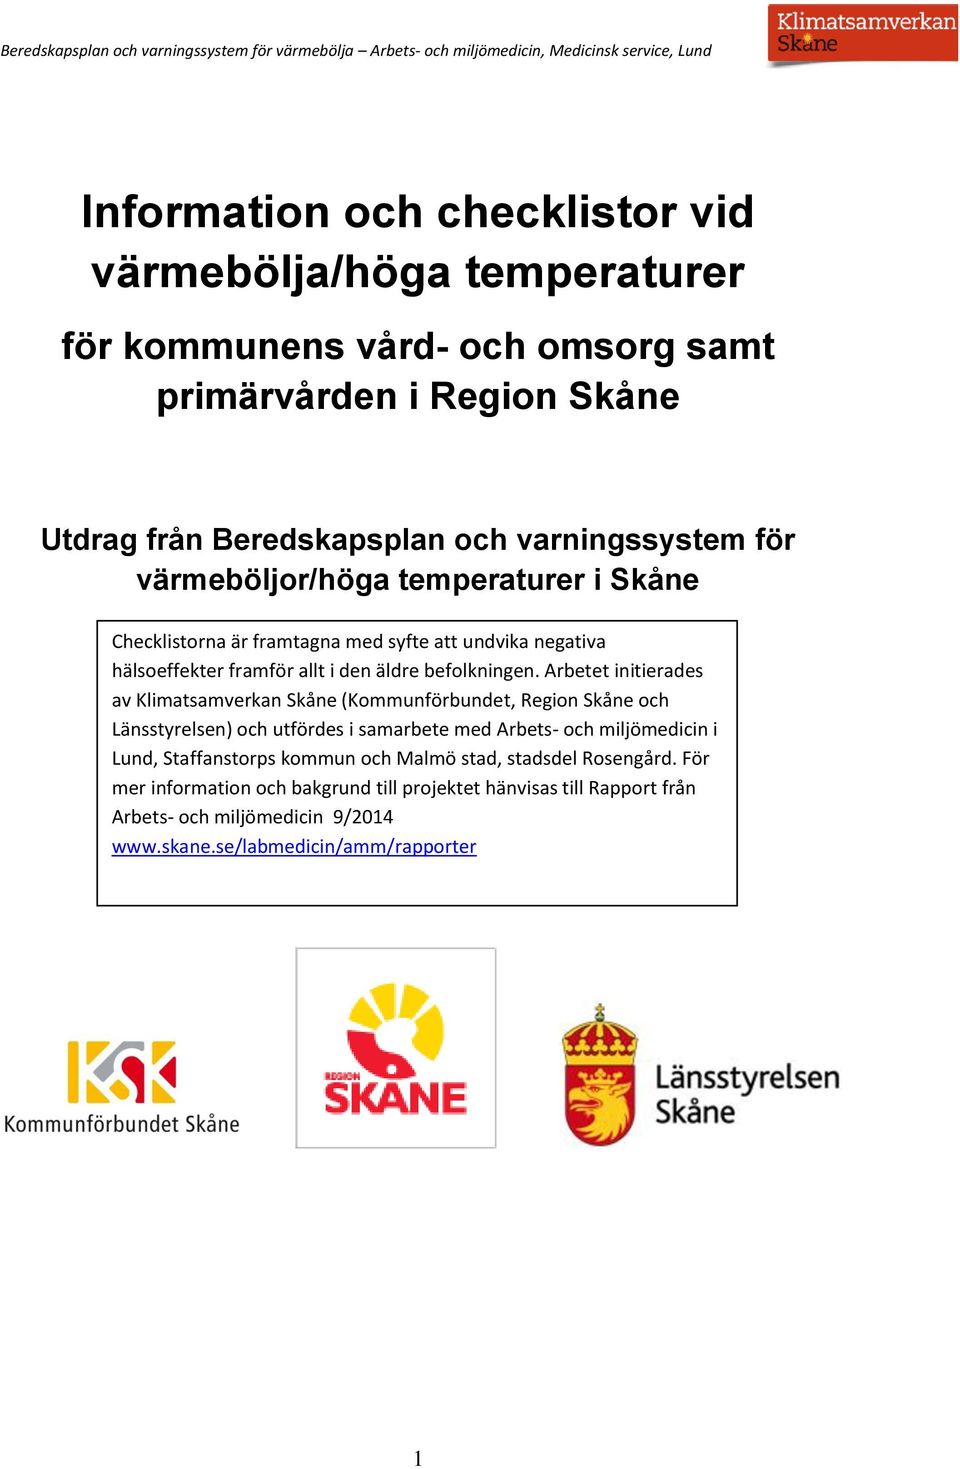 Arbetet initierades av Klimatsamverkan Skåne (Kommunförbundet, Region Skåne och Länsstyrelsen) och utfördes i samarbete med Arbets- och miljömedicin i Lund, Staffanstorps